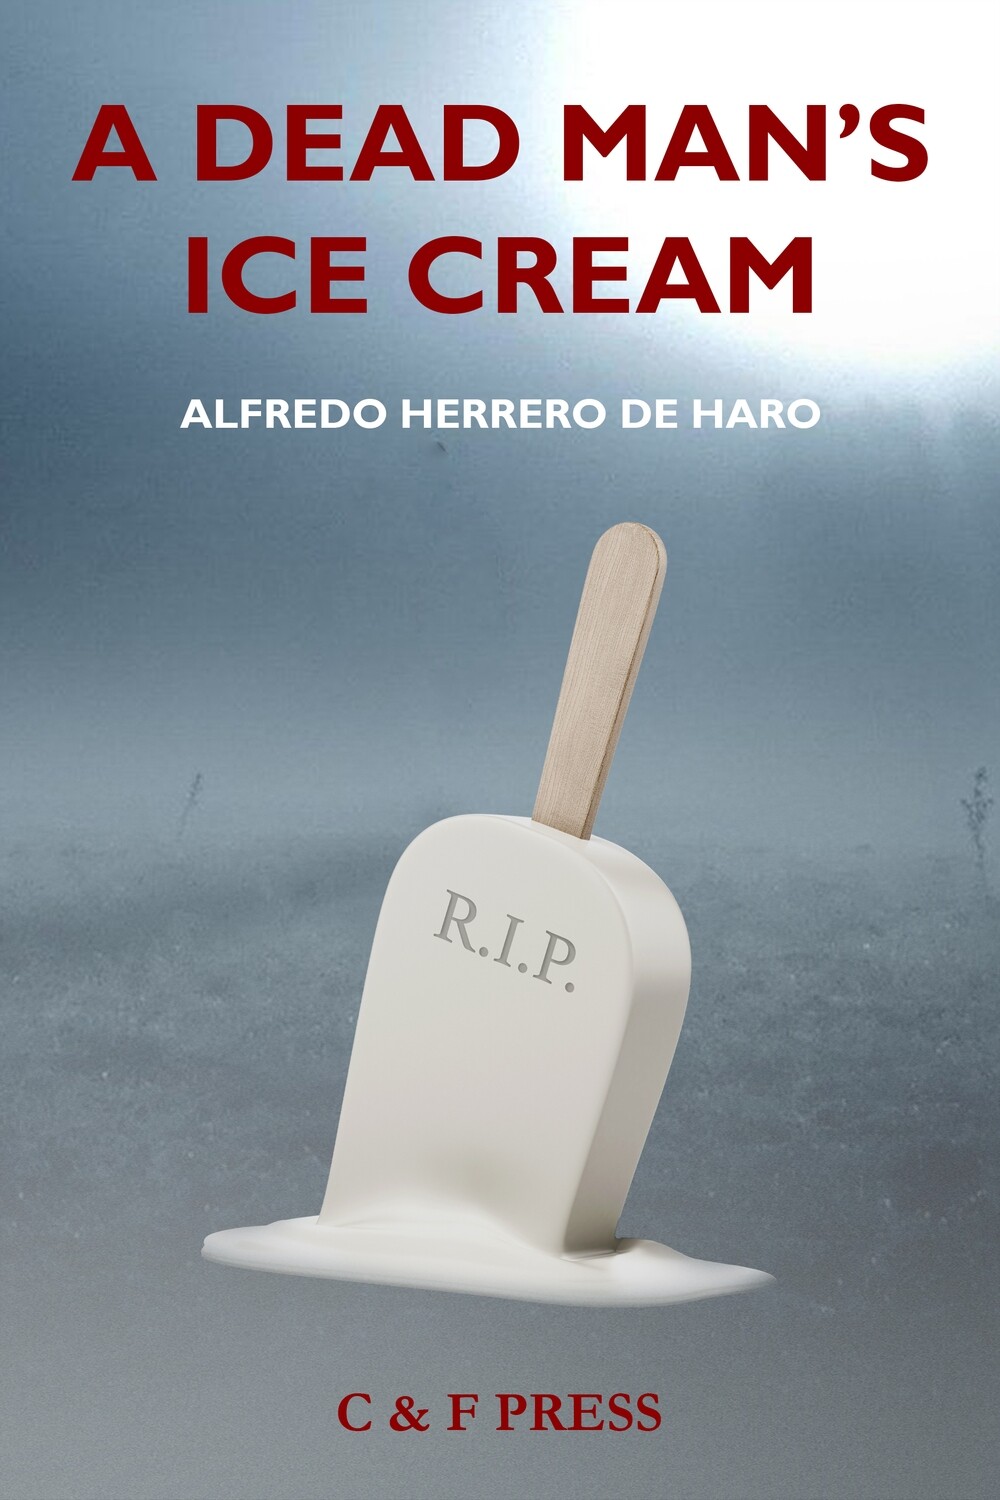 A Dead Man's Ice Cream (Europe, including non-EU countries) (free shipping)